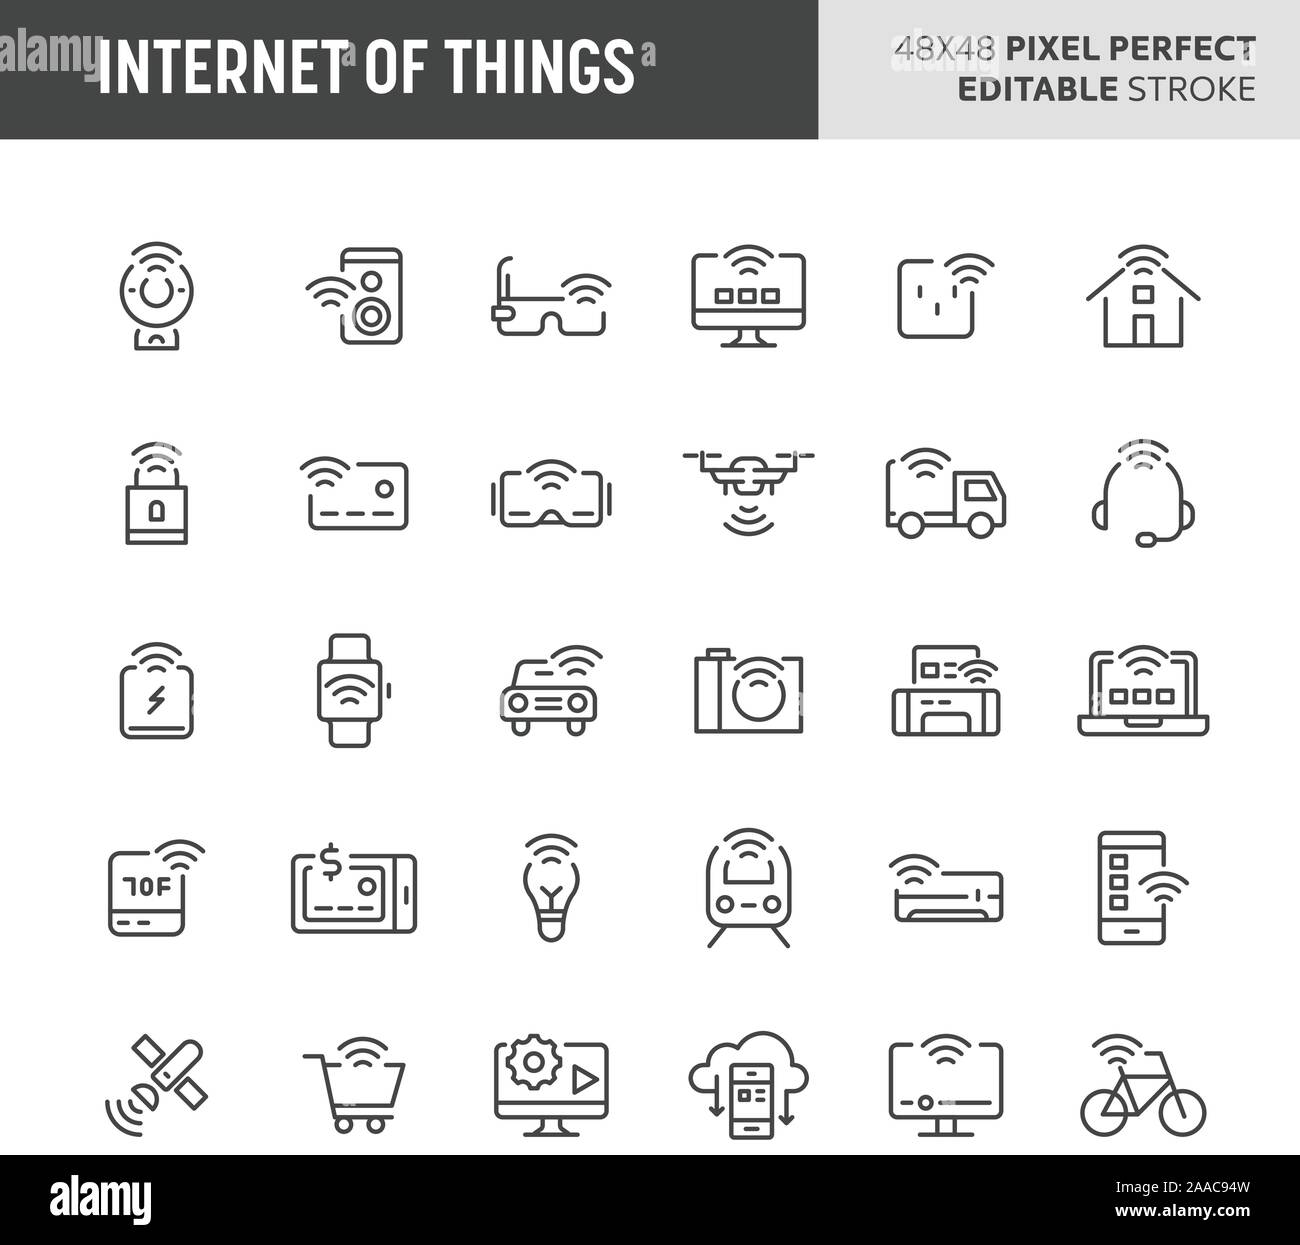 30 ligne mince des icônes associées à internet des objets (IoT). Des symboles comme le réseau, périphériques, appareils ménagers et les véhicules sont inclus dans cet ensemble. Illustration de Vecteur